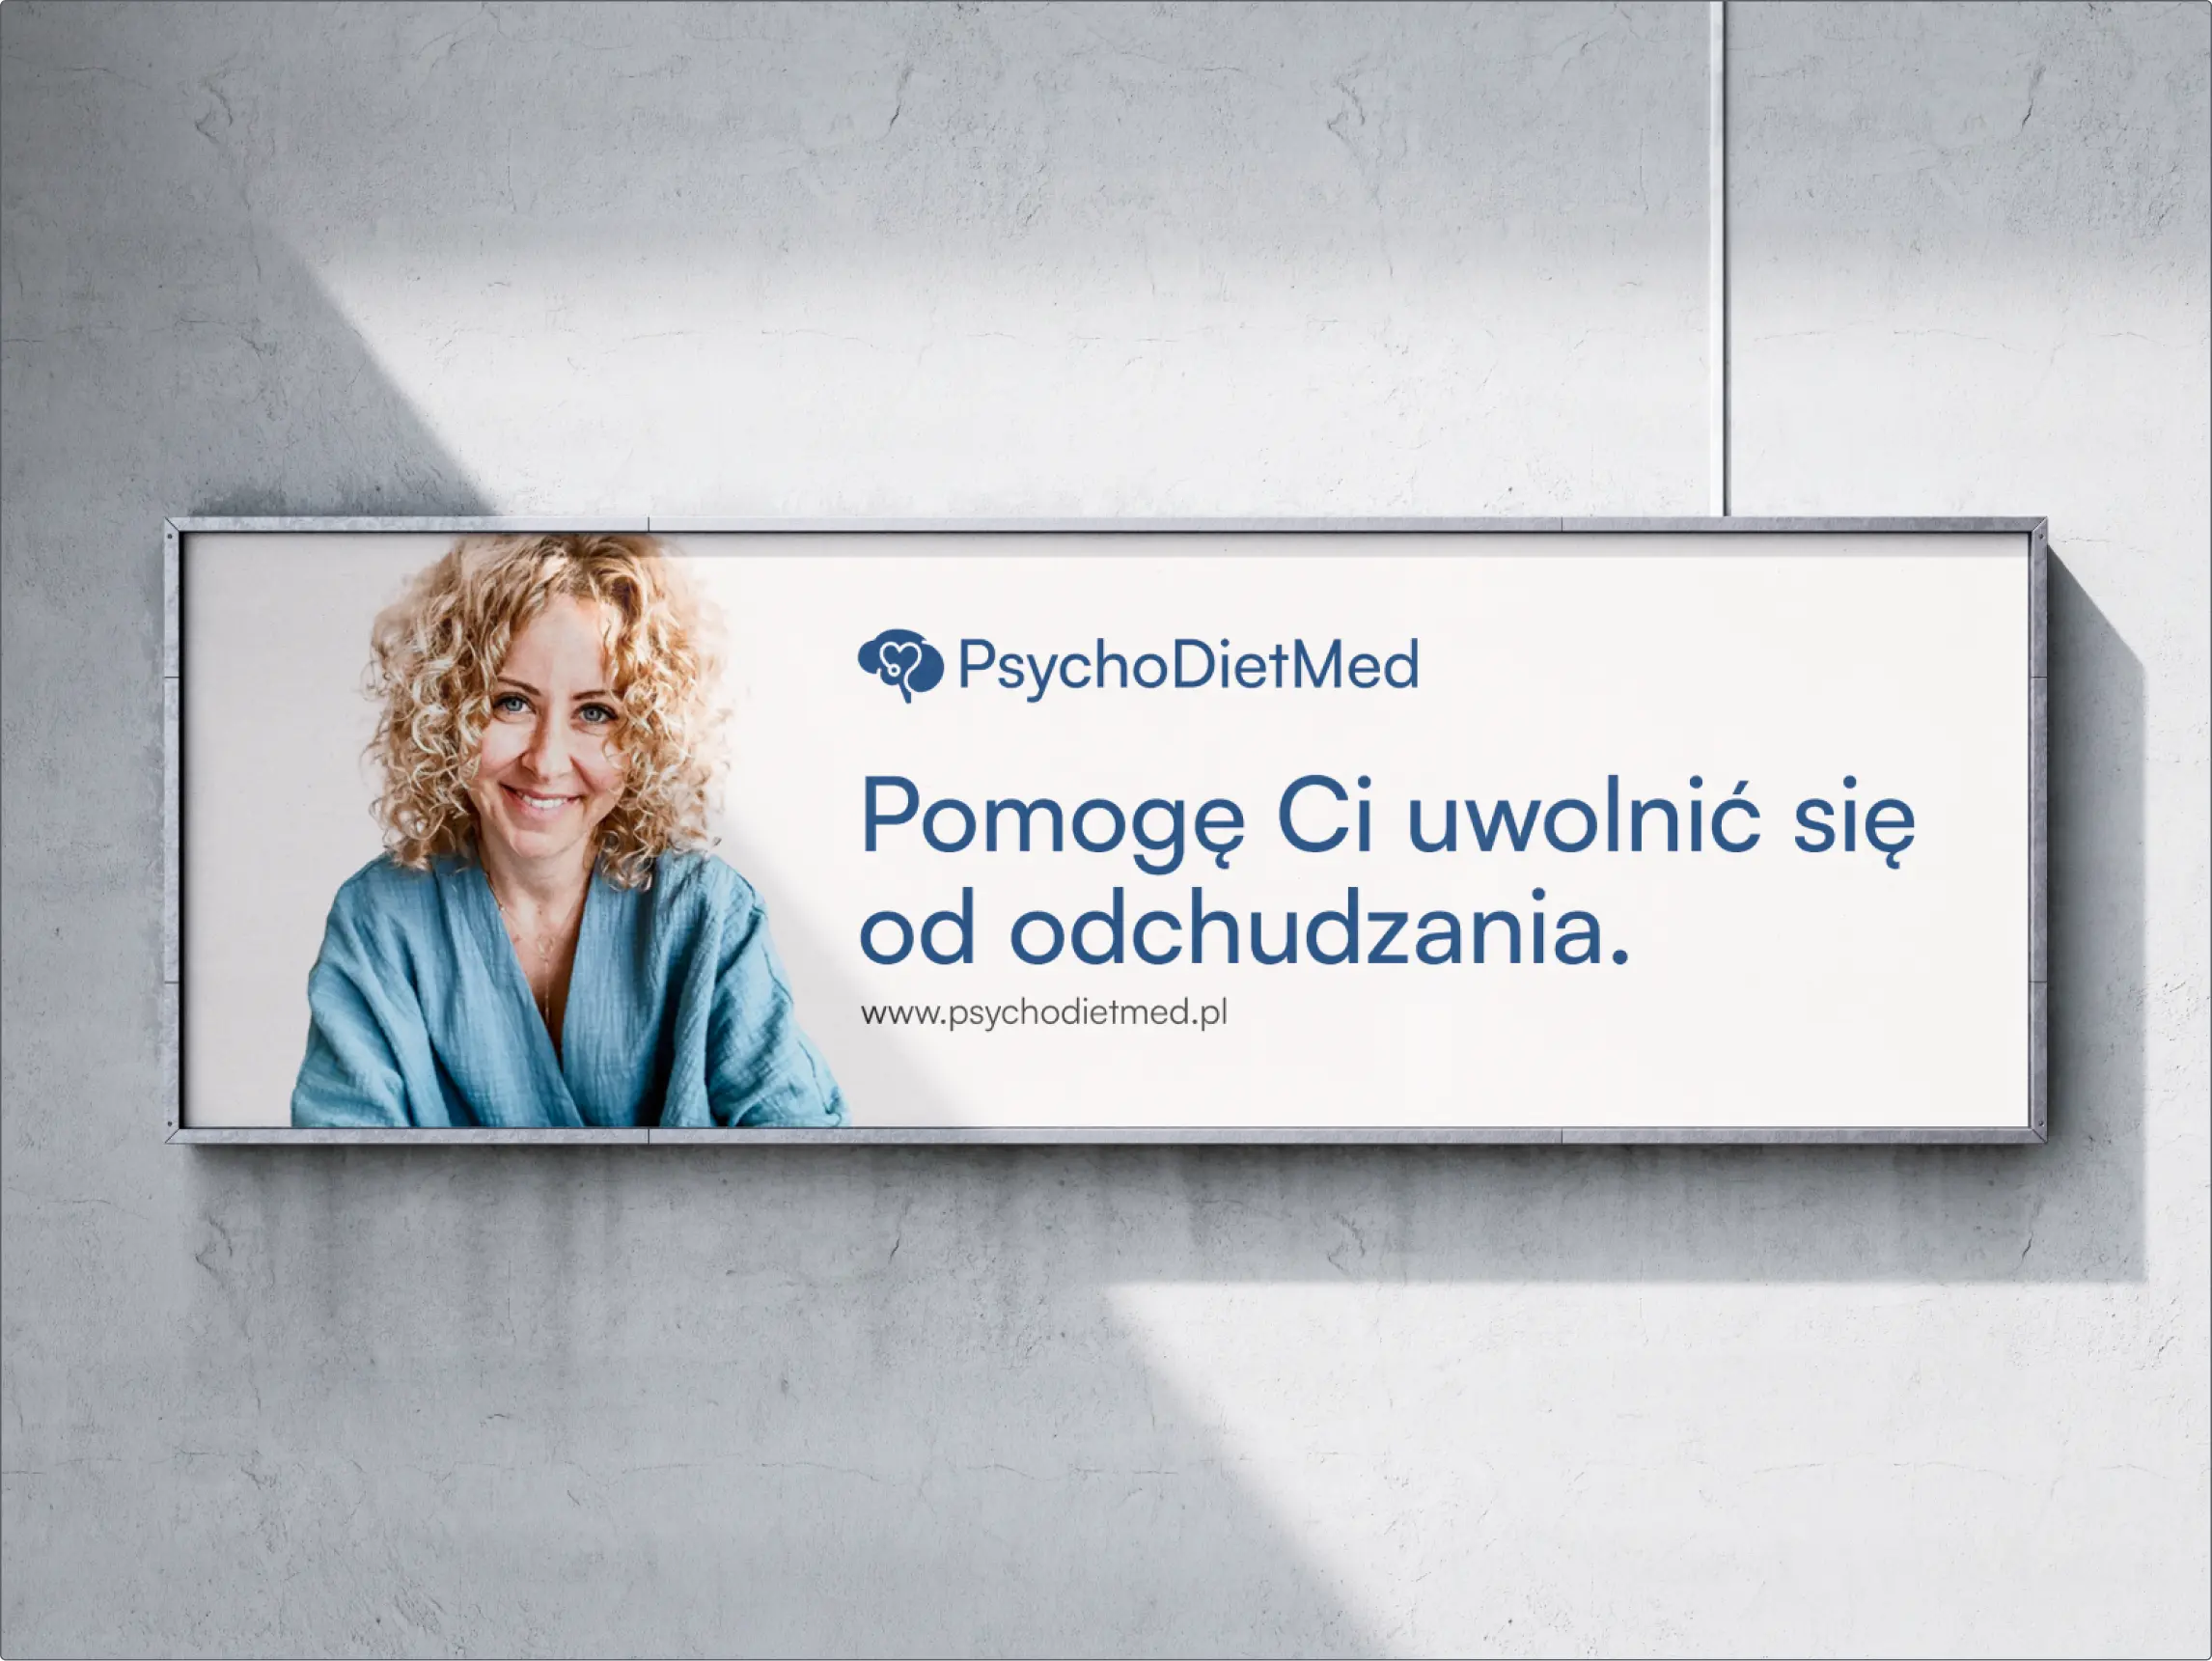 Wizualizacja reklamy kliniki PsychoDietMed na szarej ścianie, na reklamie znajduje się psychodietetyk – blondynka w niebieskiej bluzce